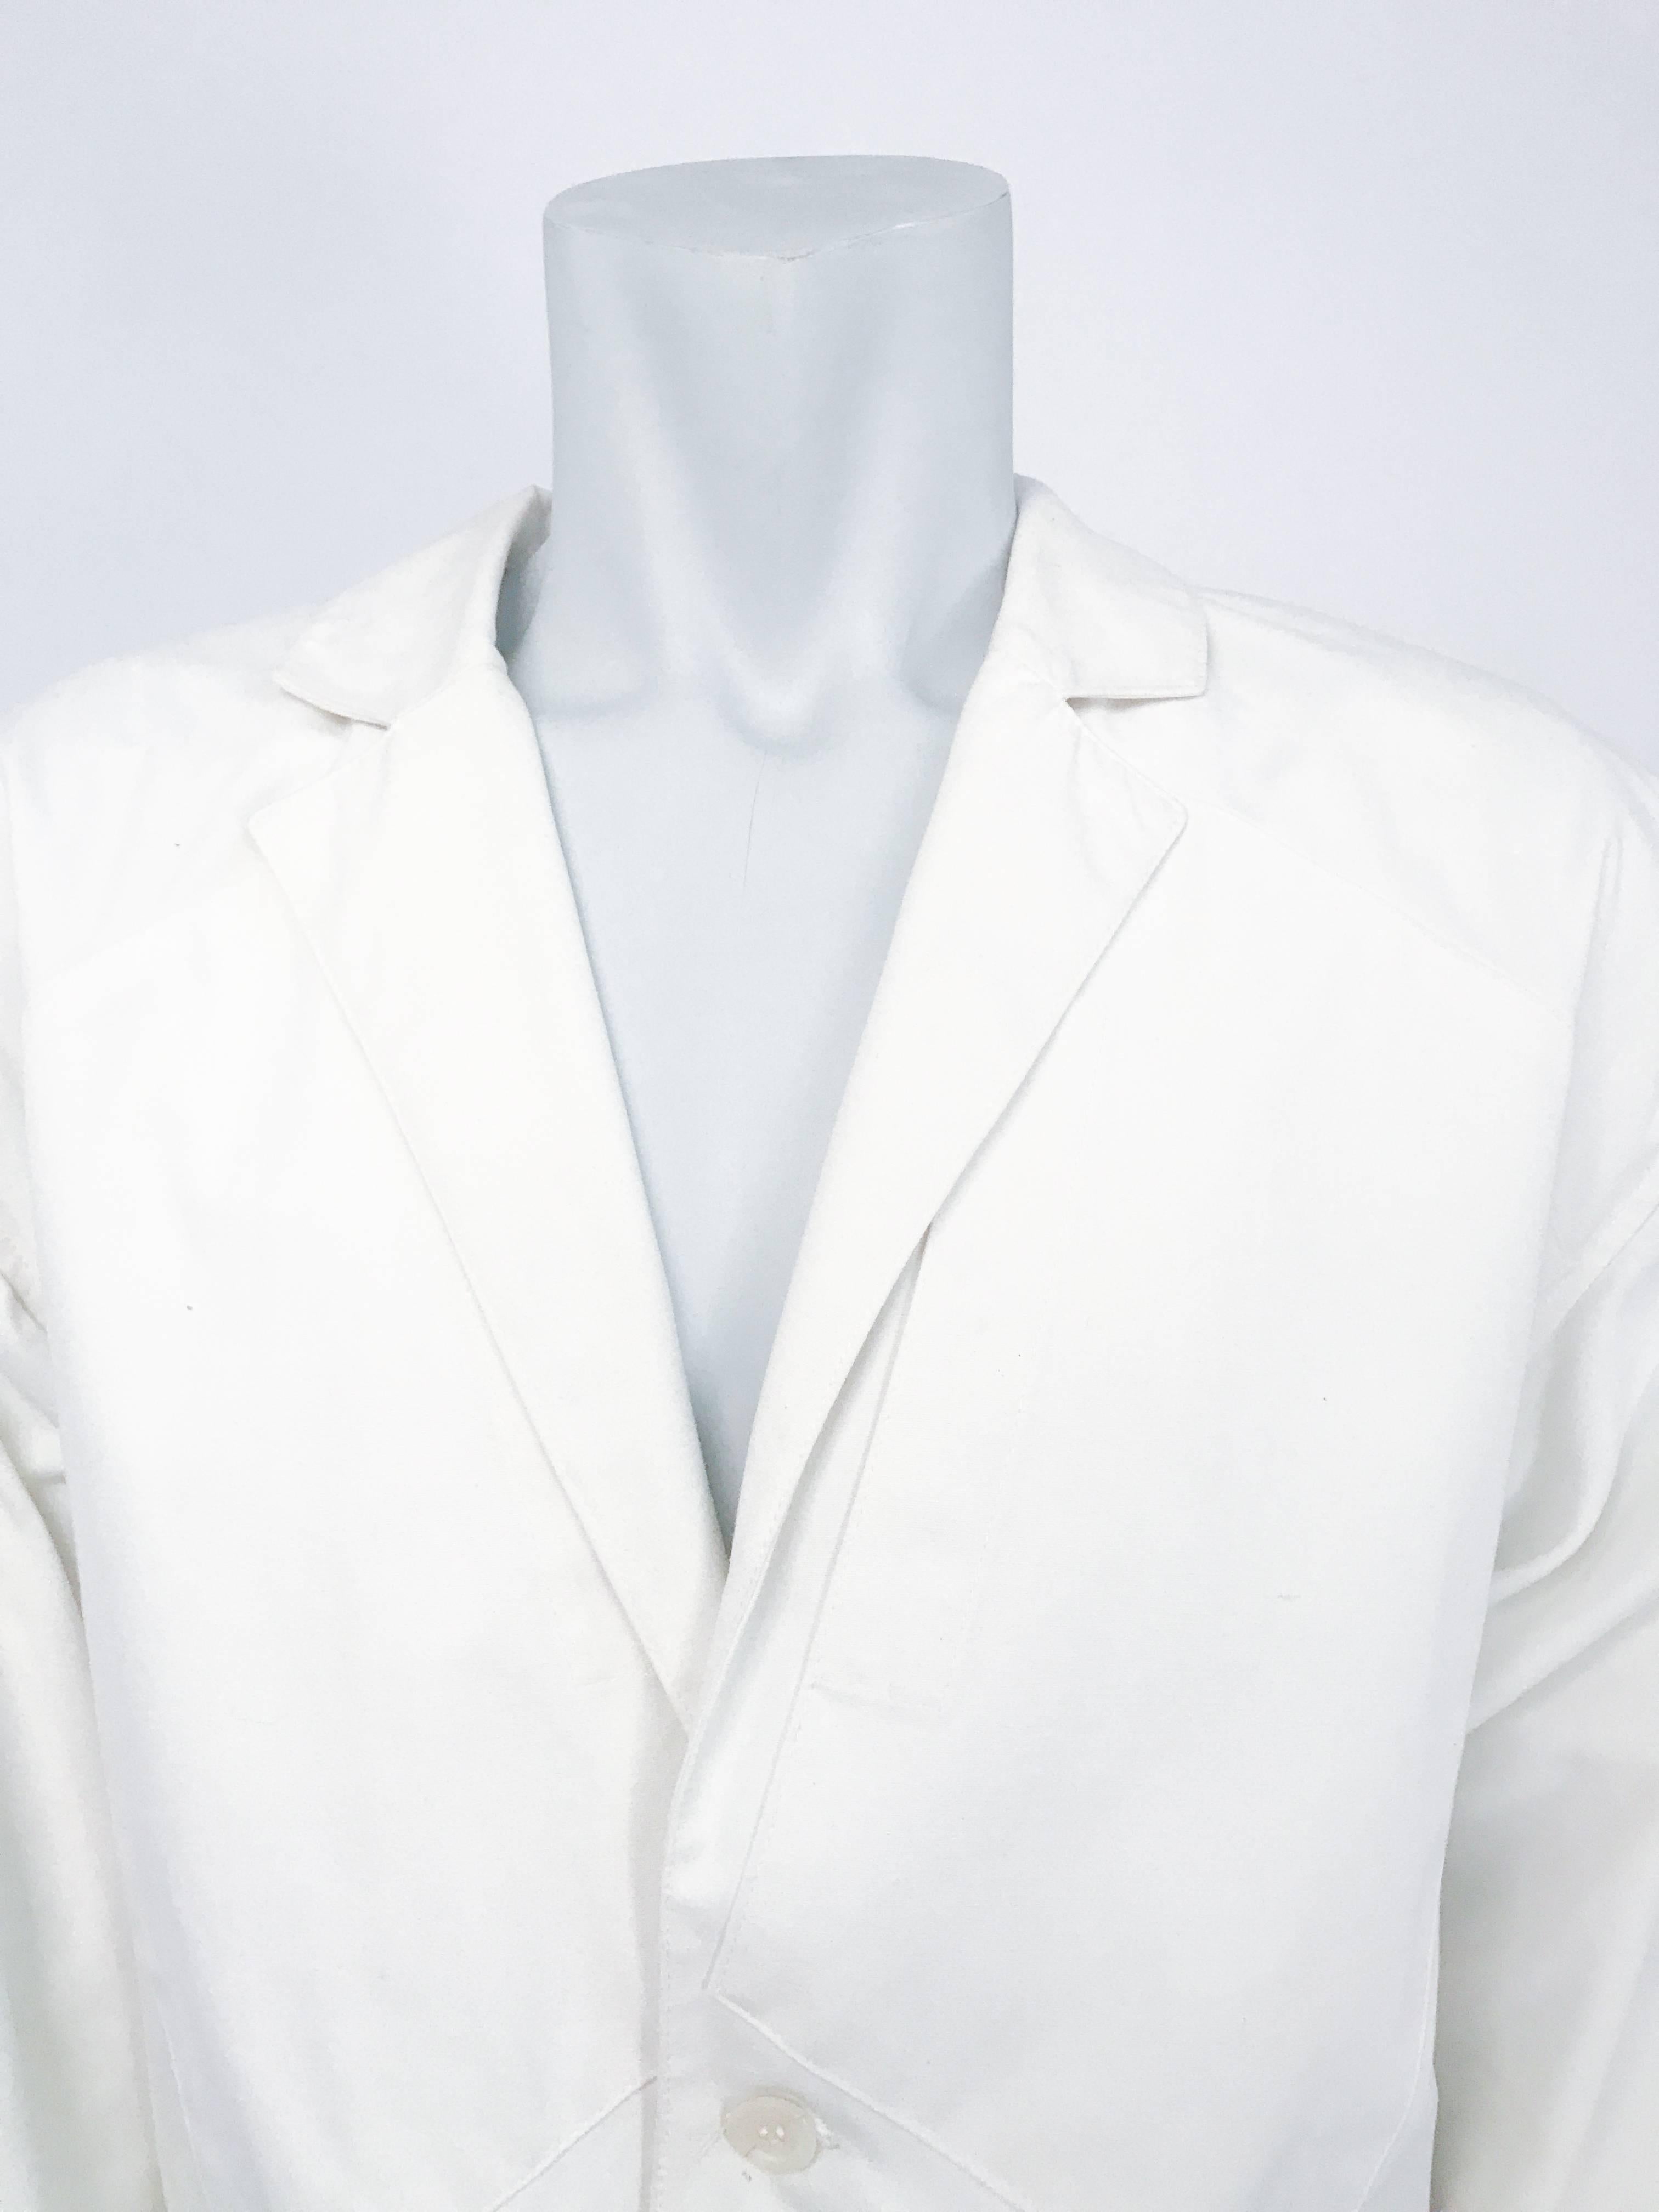 veste blanche Jean Charles De Castelbajac des années 1980. Veste blanche avec des poches stylistiquement surdimensionnées.